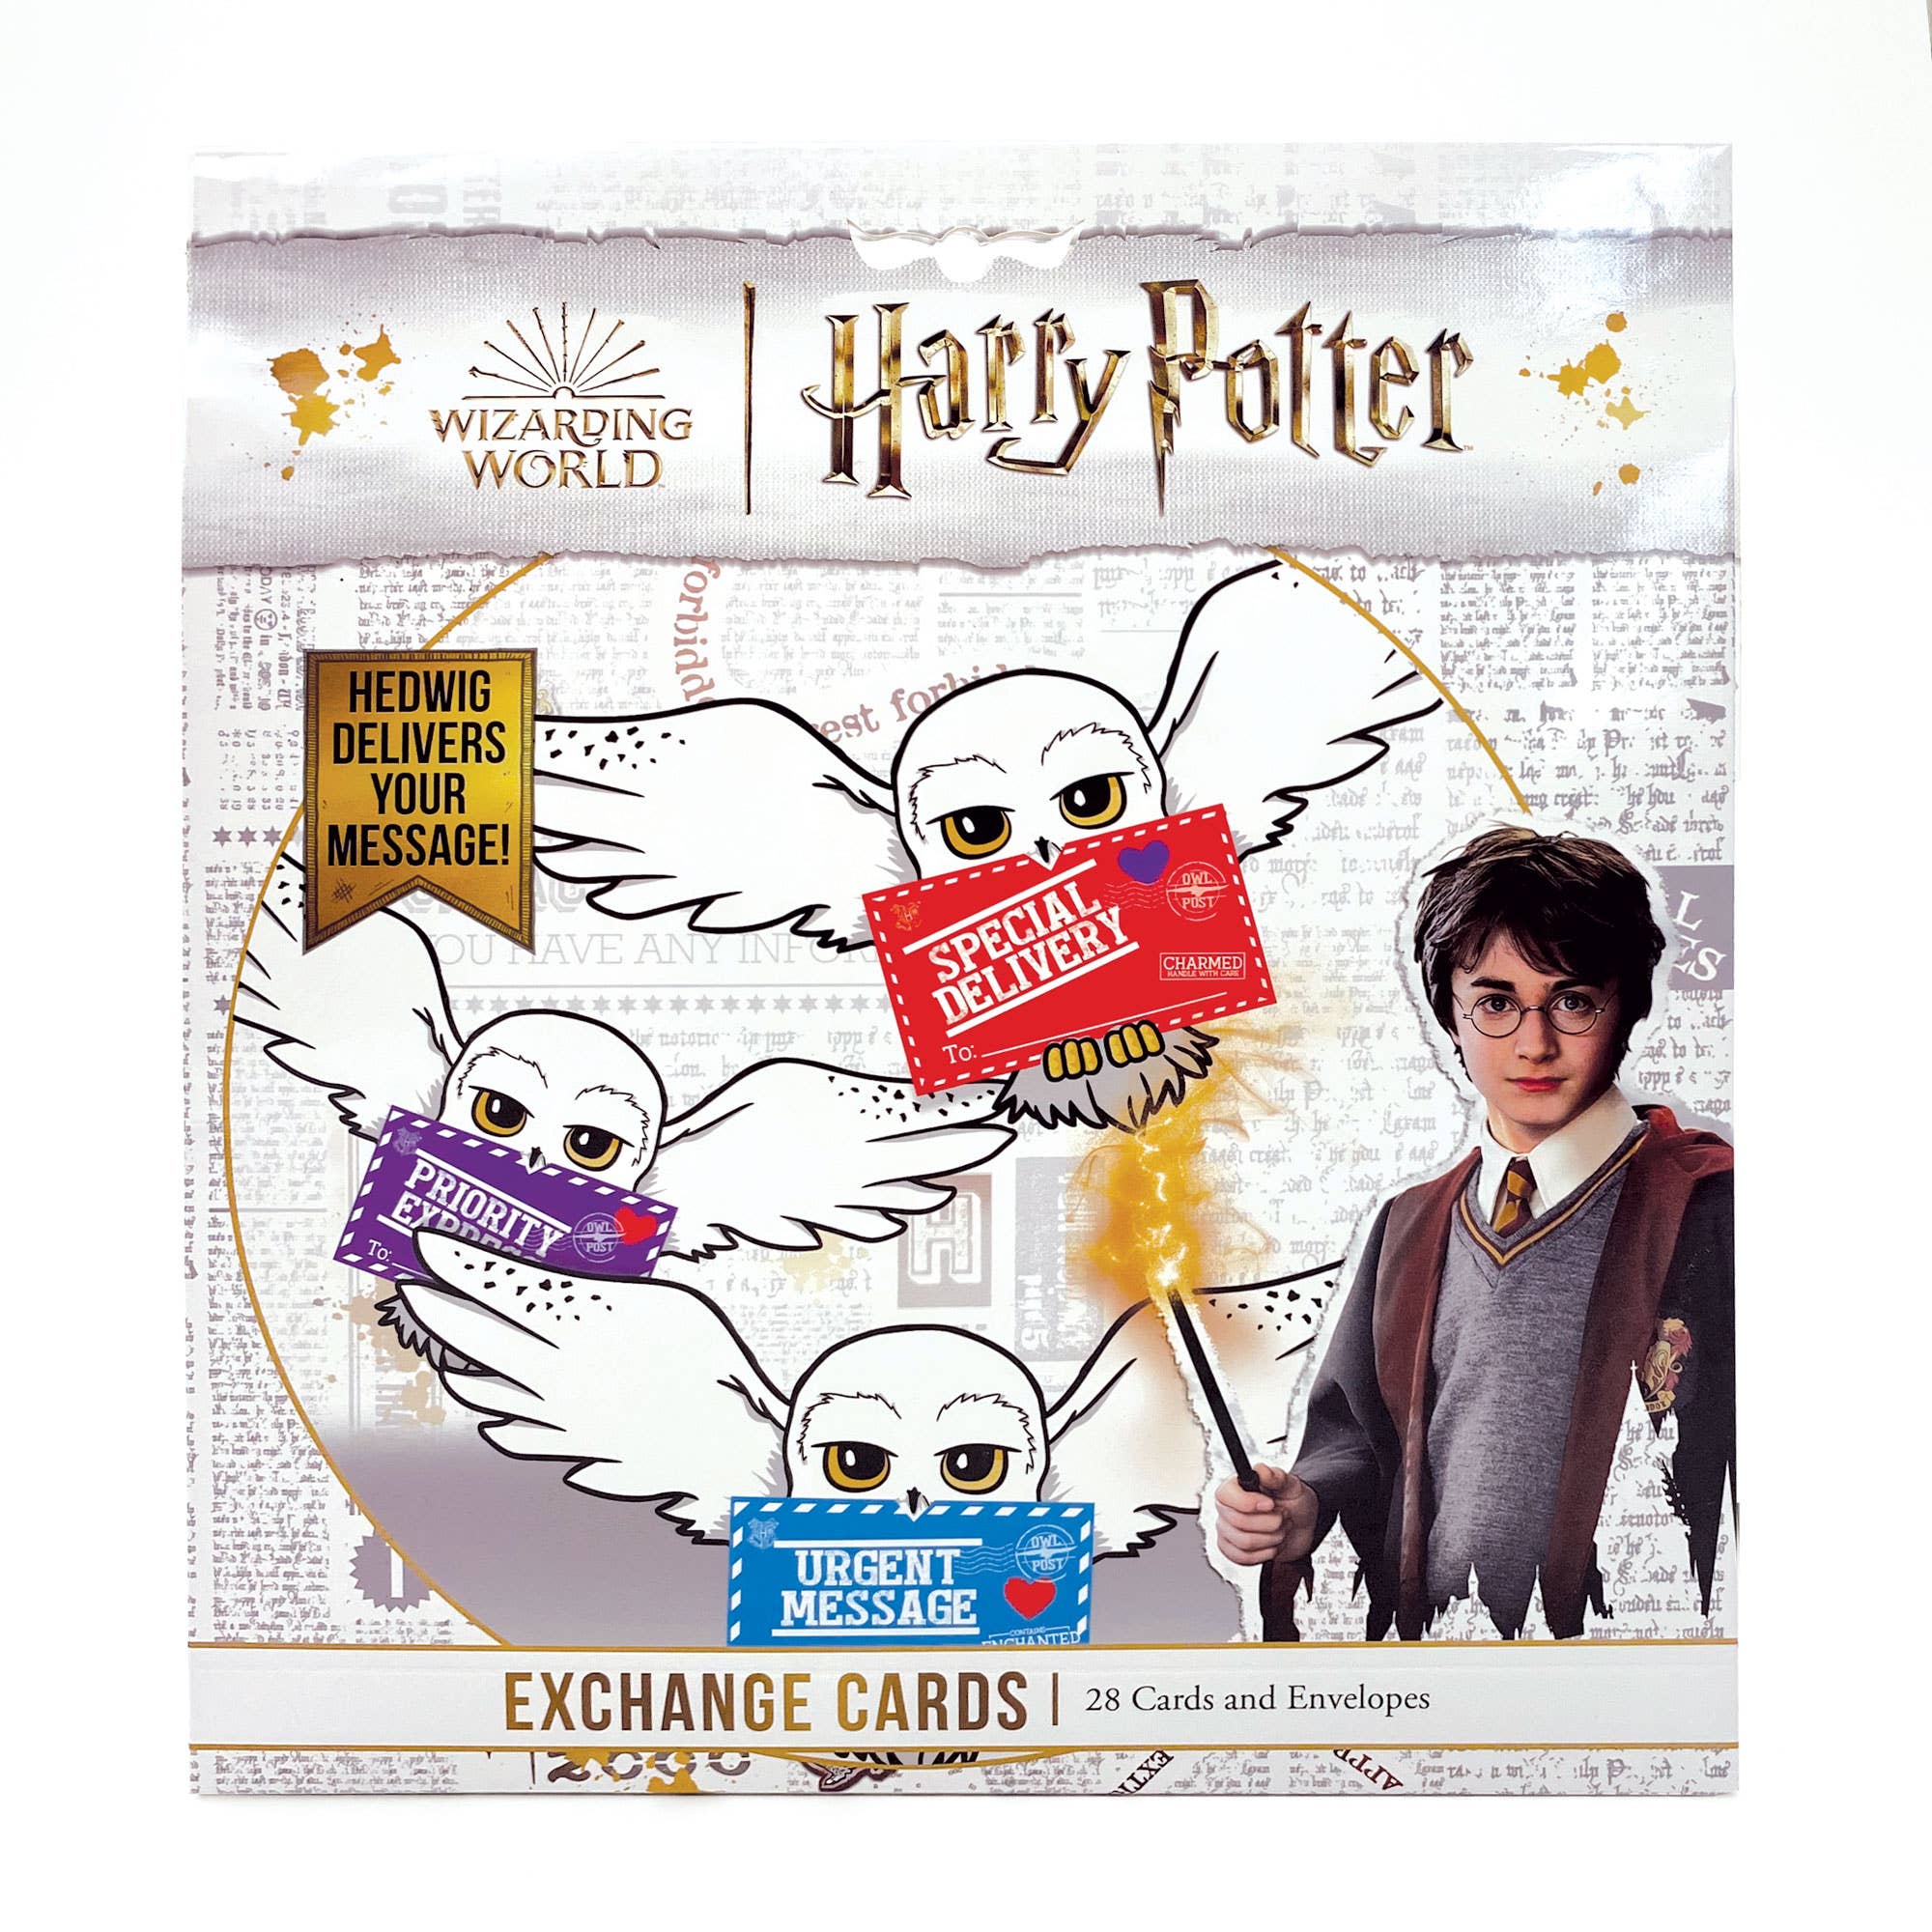 Las mejores 250 ideas de Cumpleaños: Harry Potter  harry potter fiesta,  temática de harry potter, cumpleaños harry potter